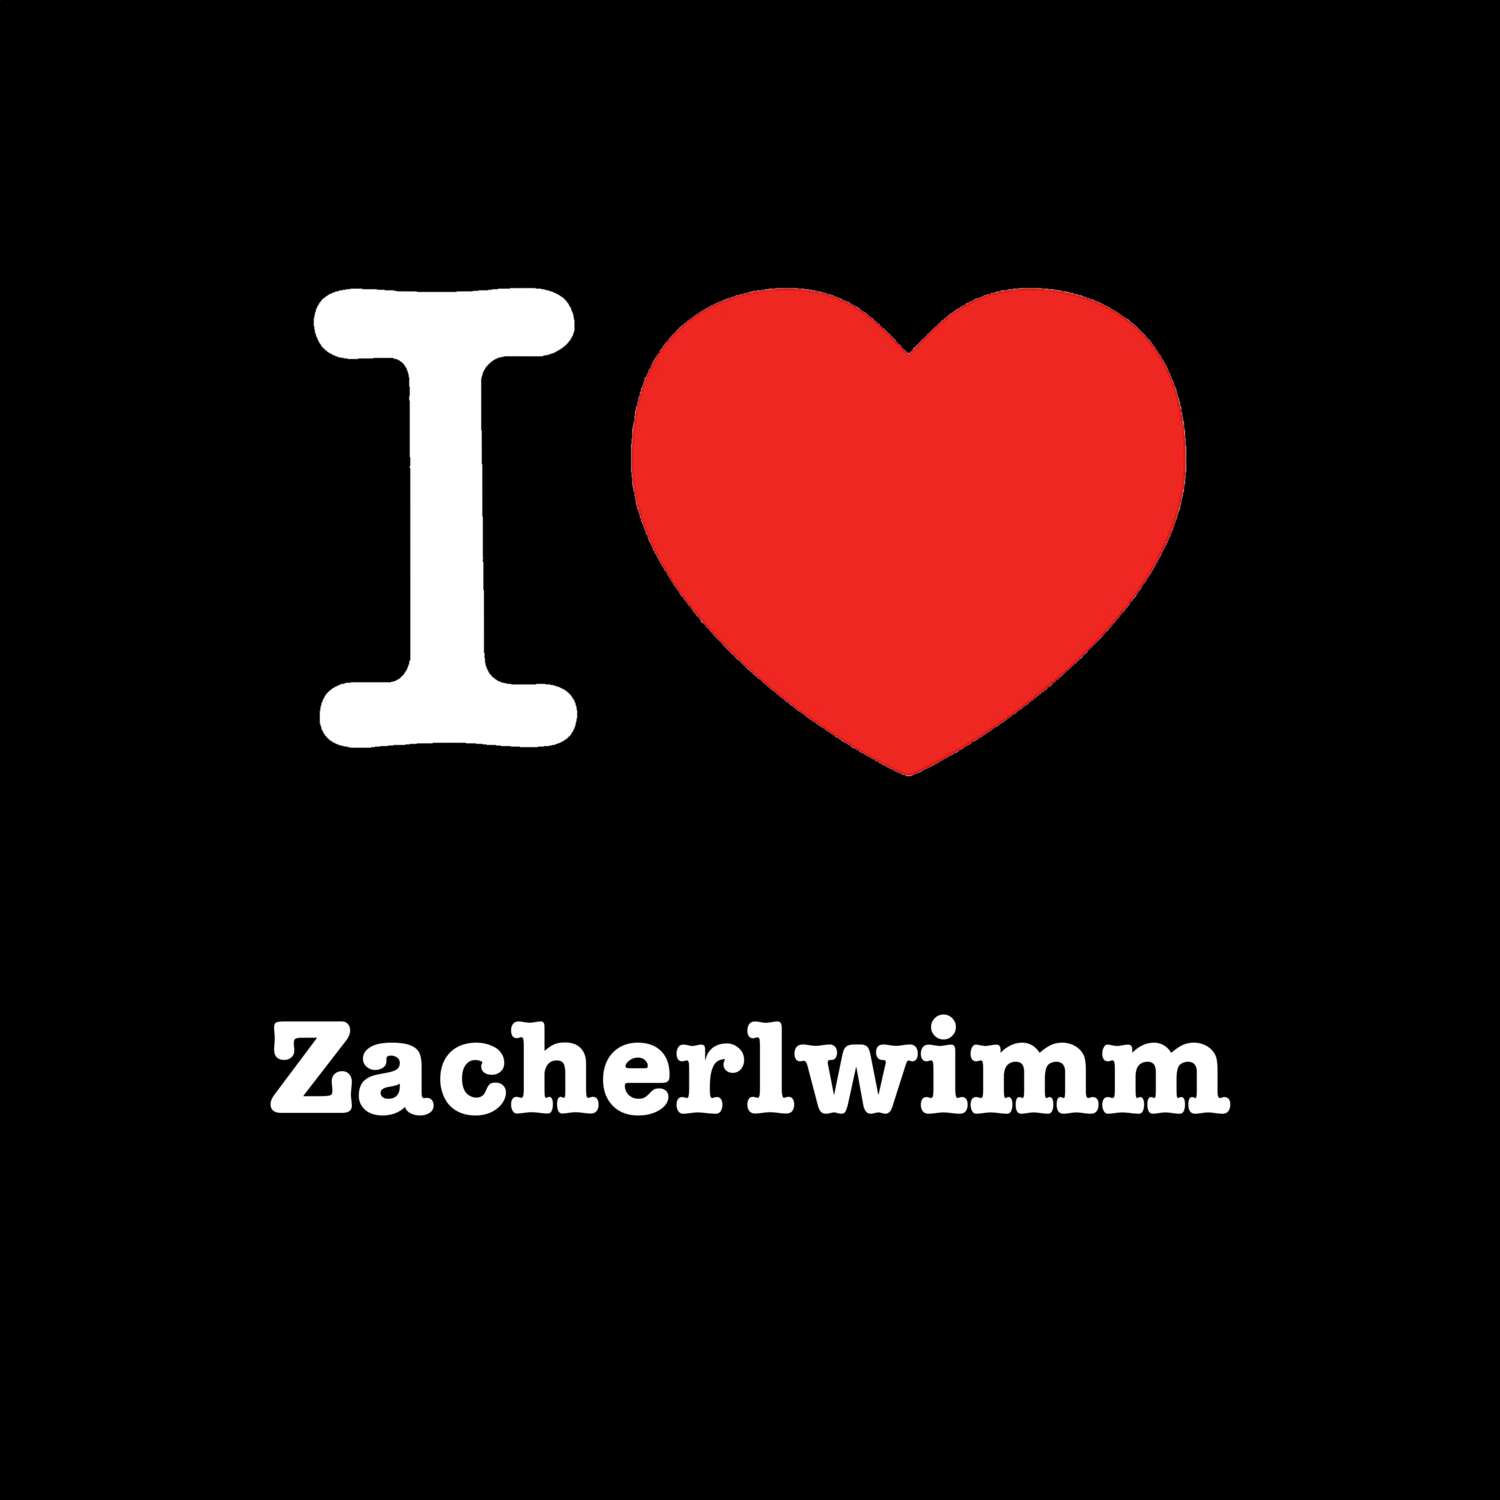 Zacherlwimm T-Shirt »I love«